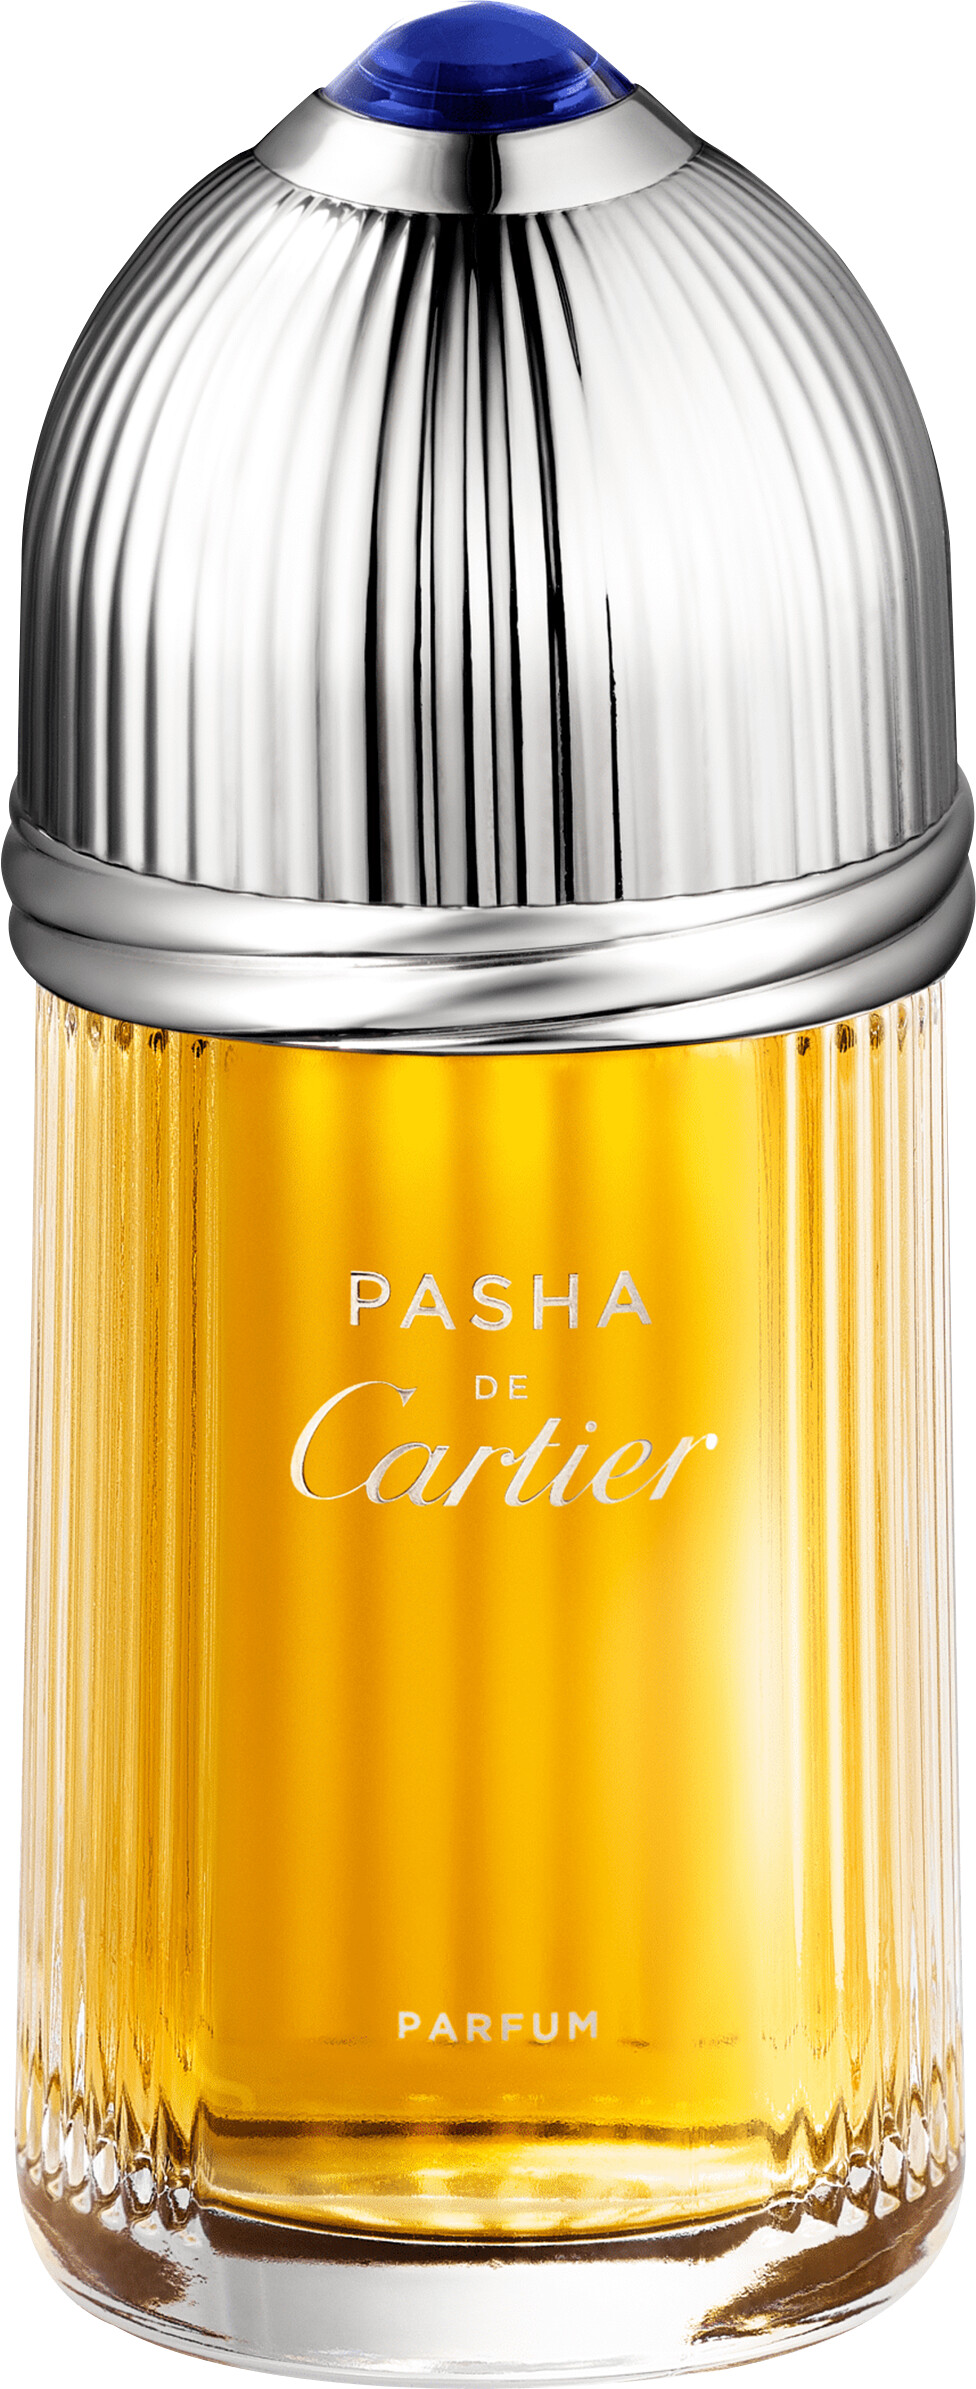 Pasha de cartier parfum photoshop cs6 retina display